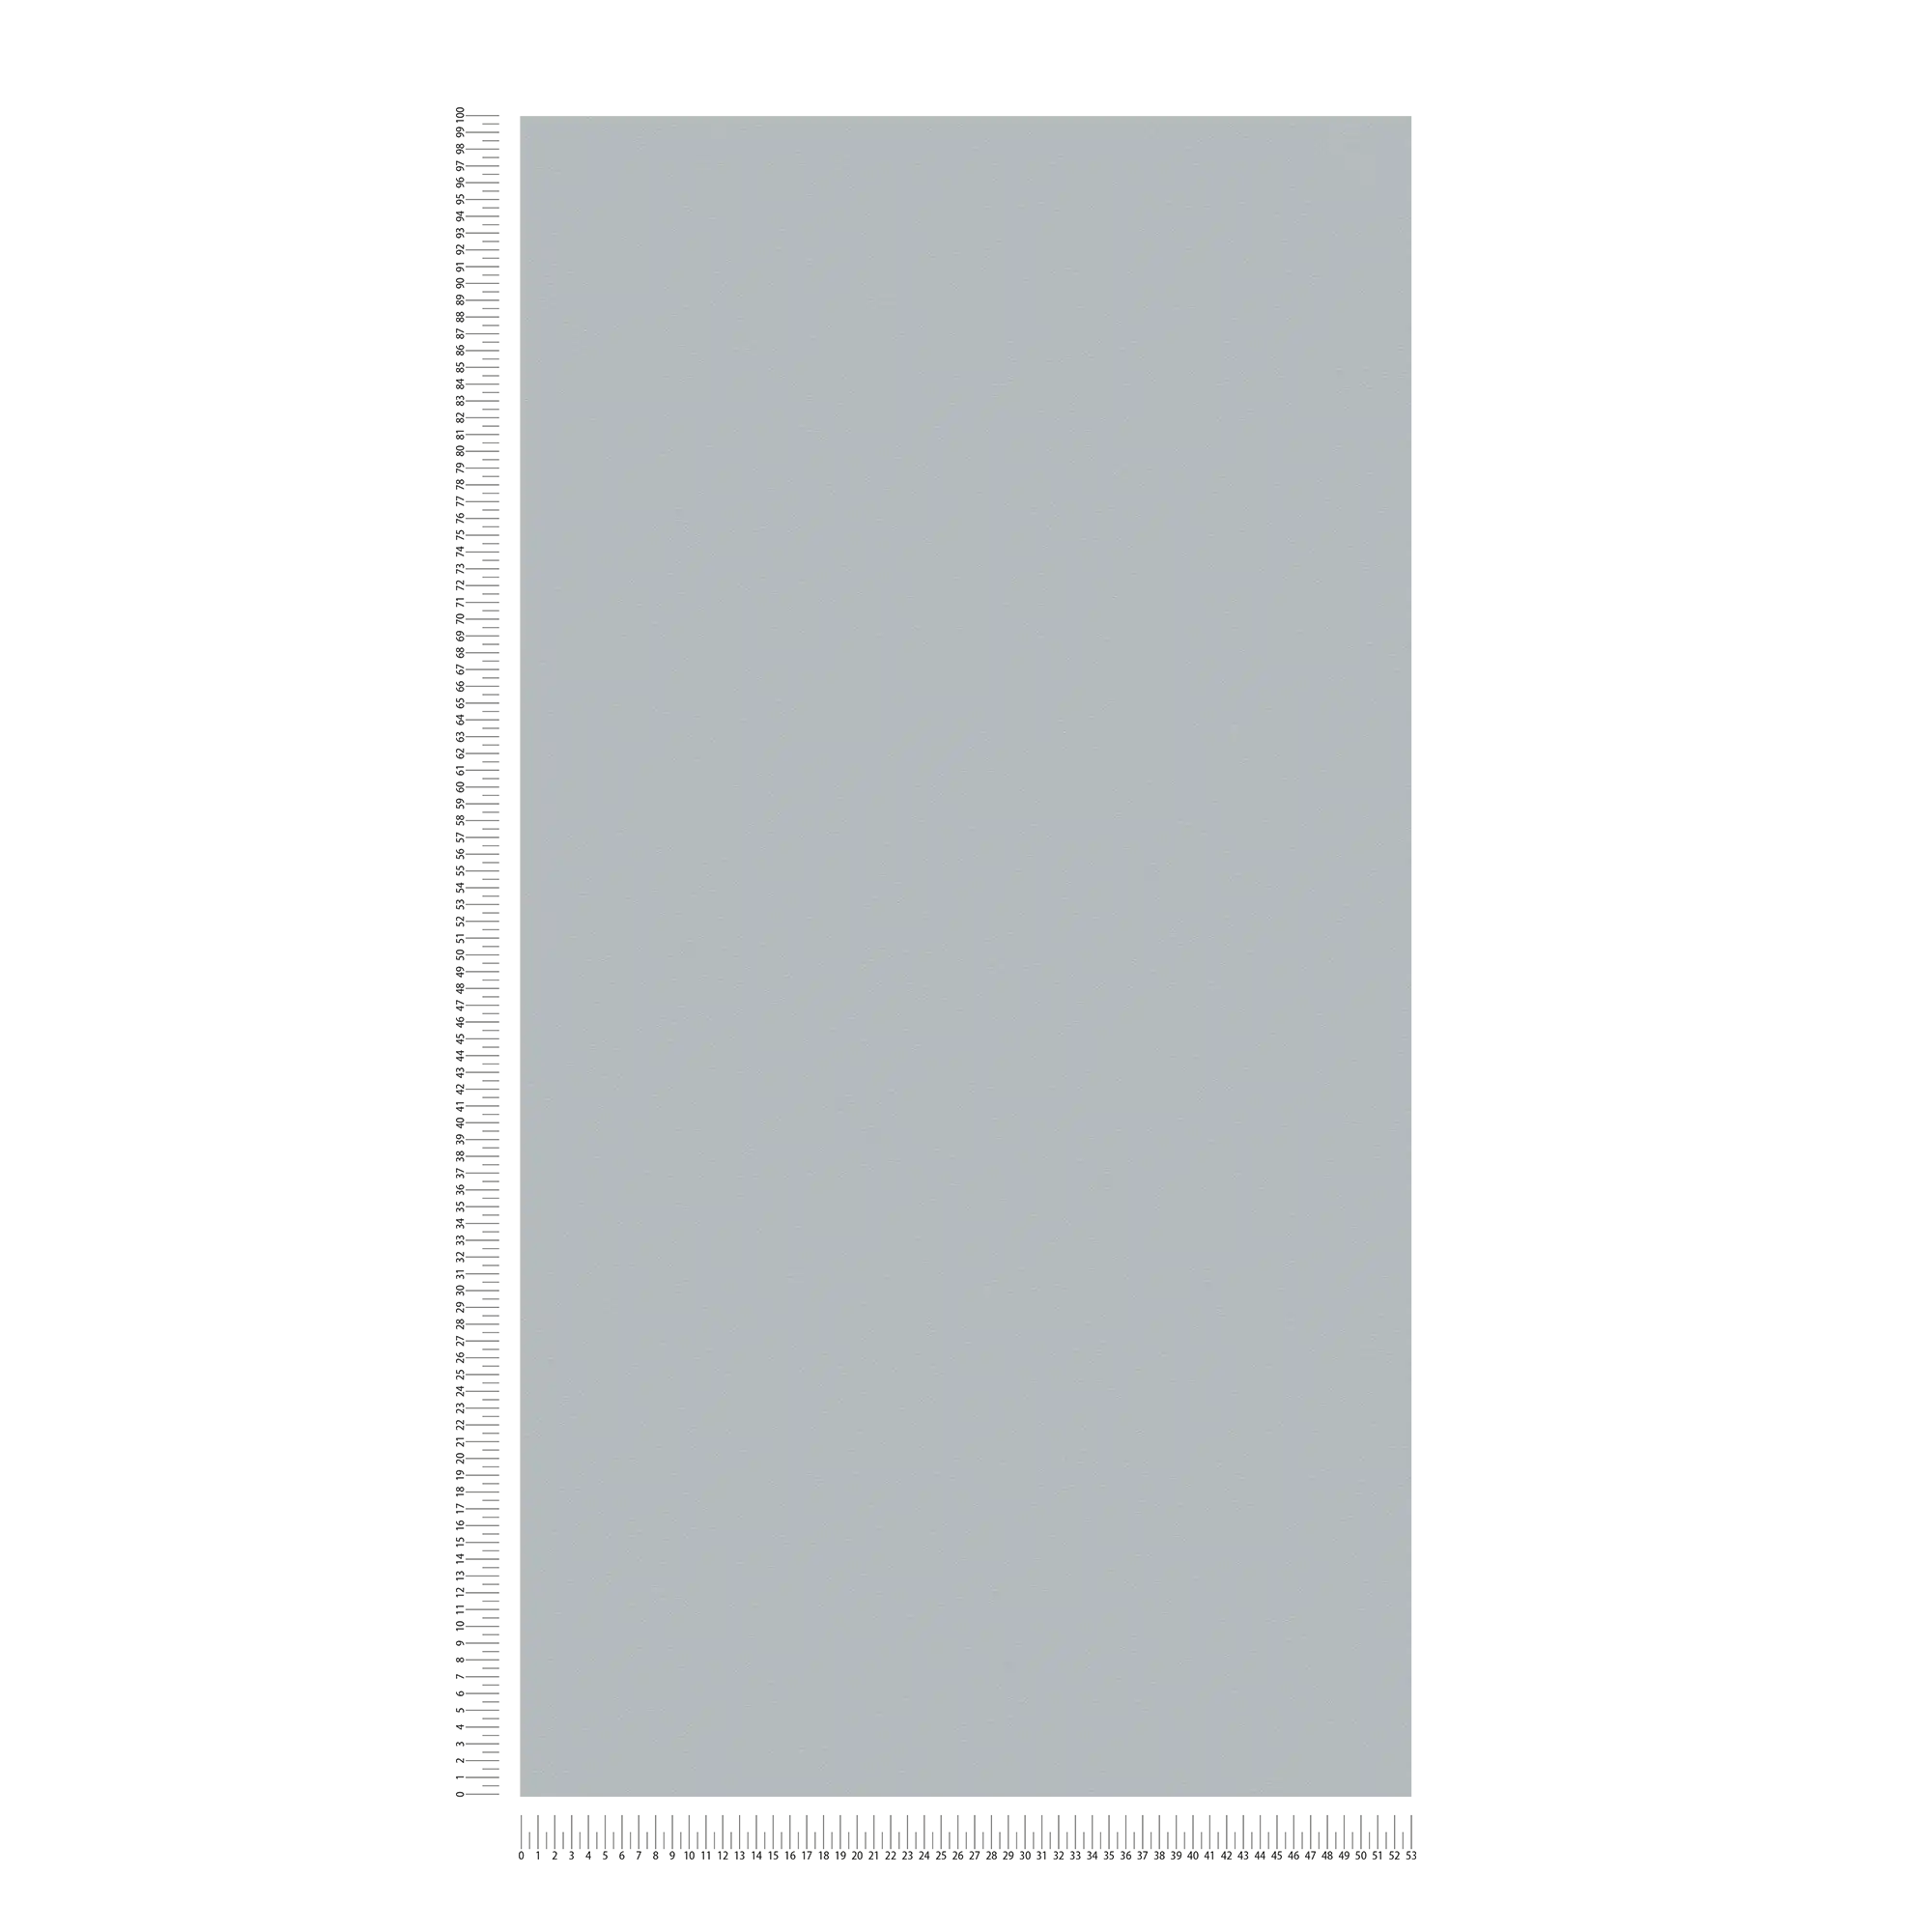             Carta da parati in tessuto non tessuto grigio pietra monocolore, opaca e con struttura in schiuma
        